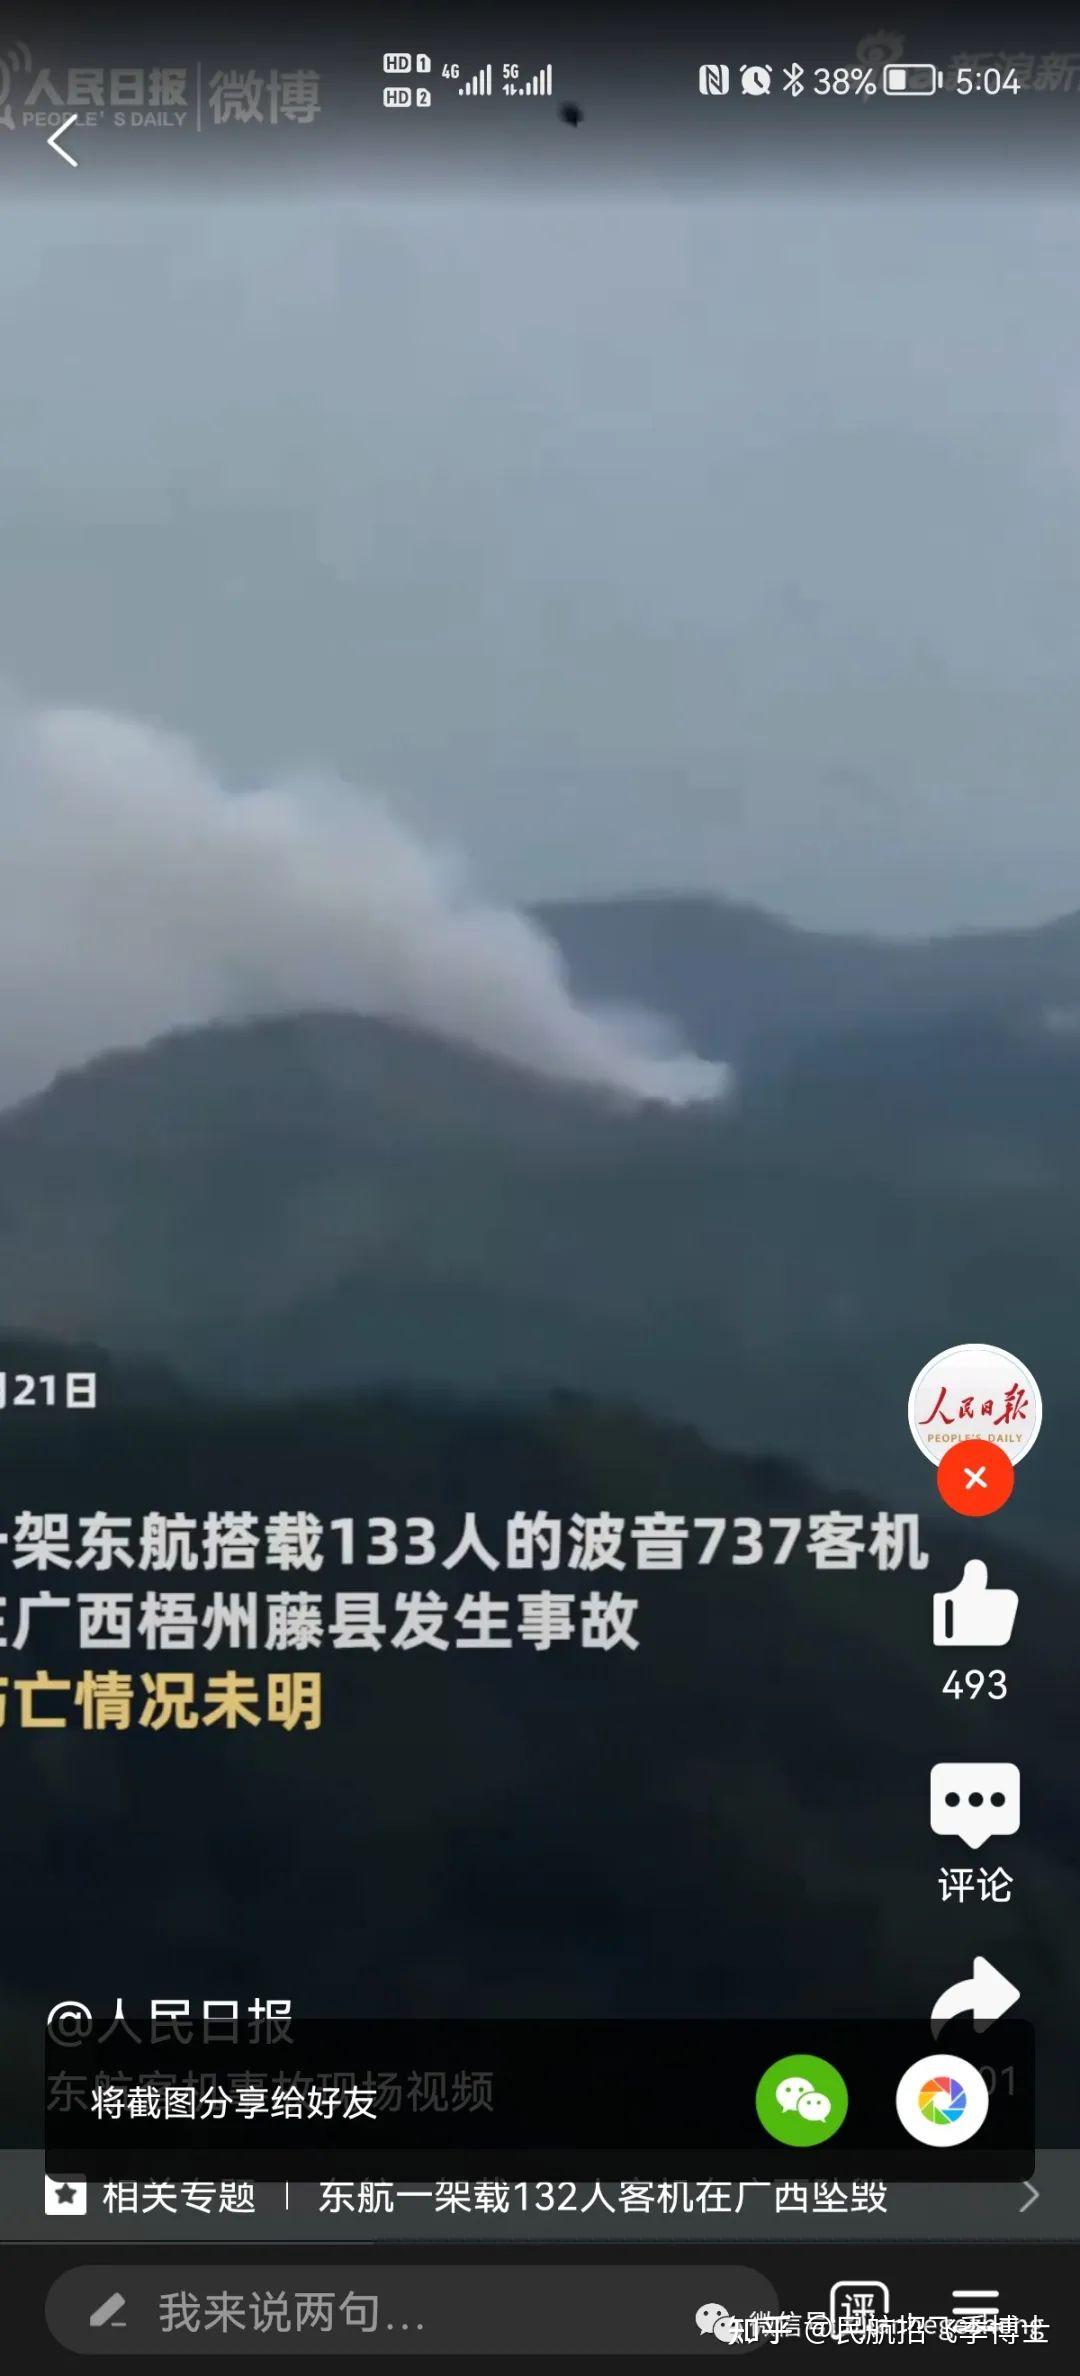 rip东航mu5735波音737昆明至广州航班在梧州坠毁乘客123人机组9人